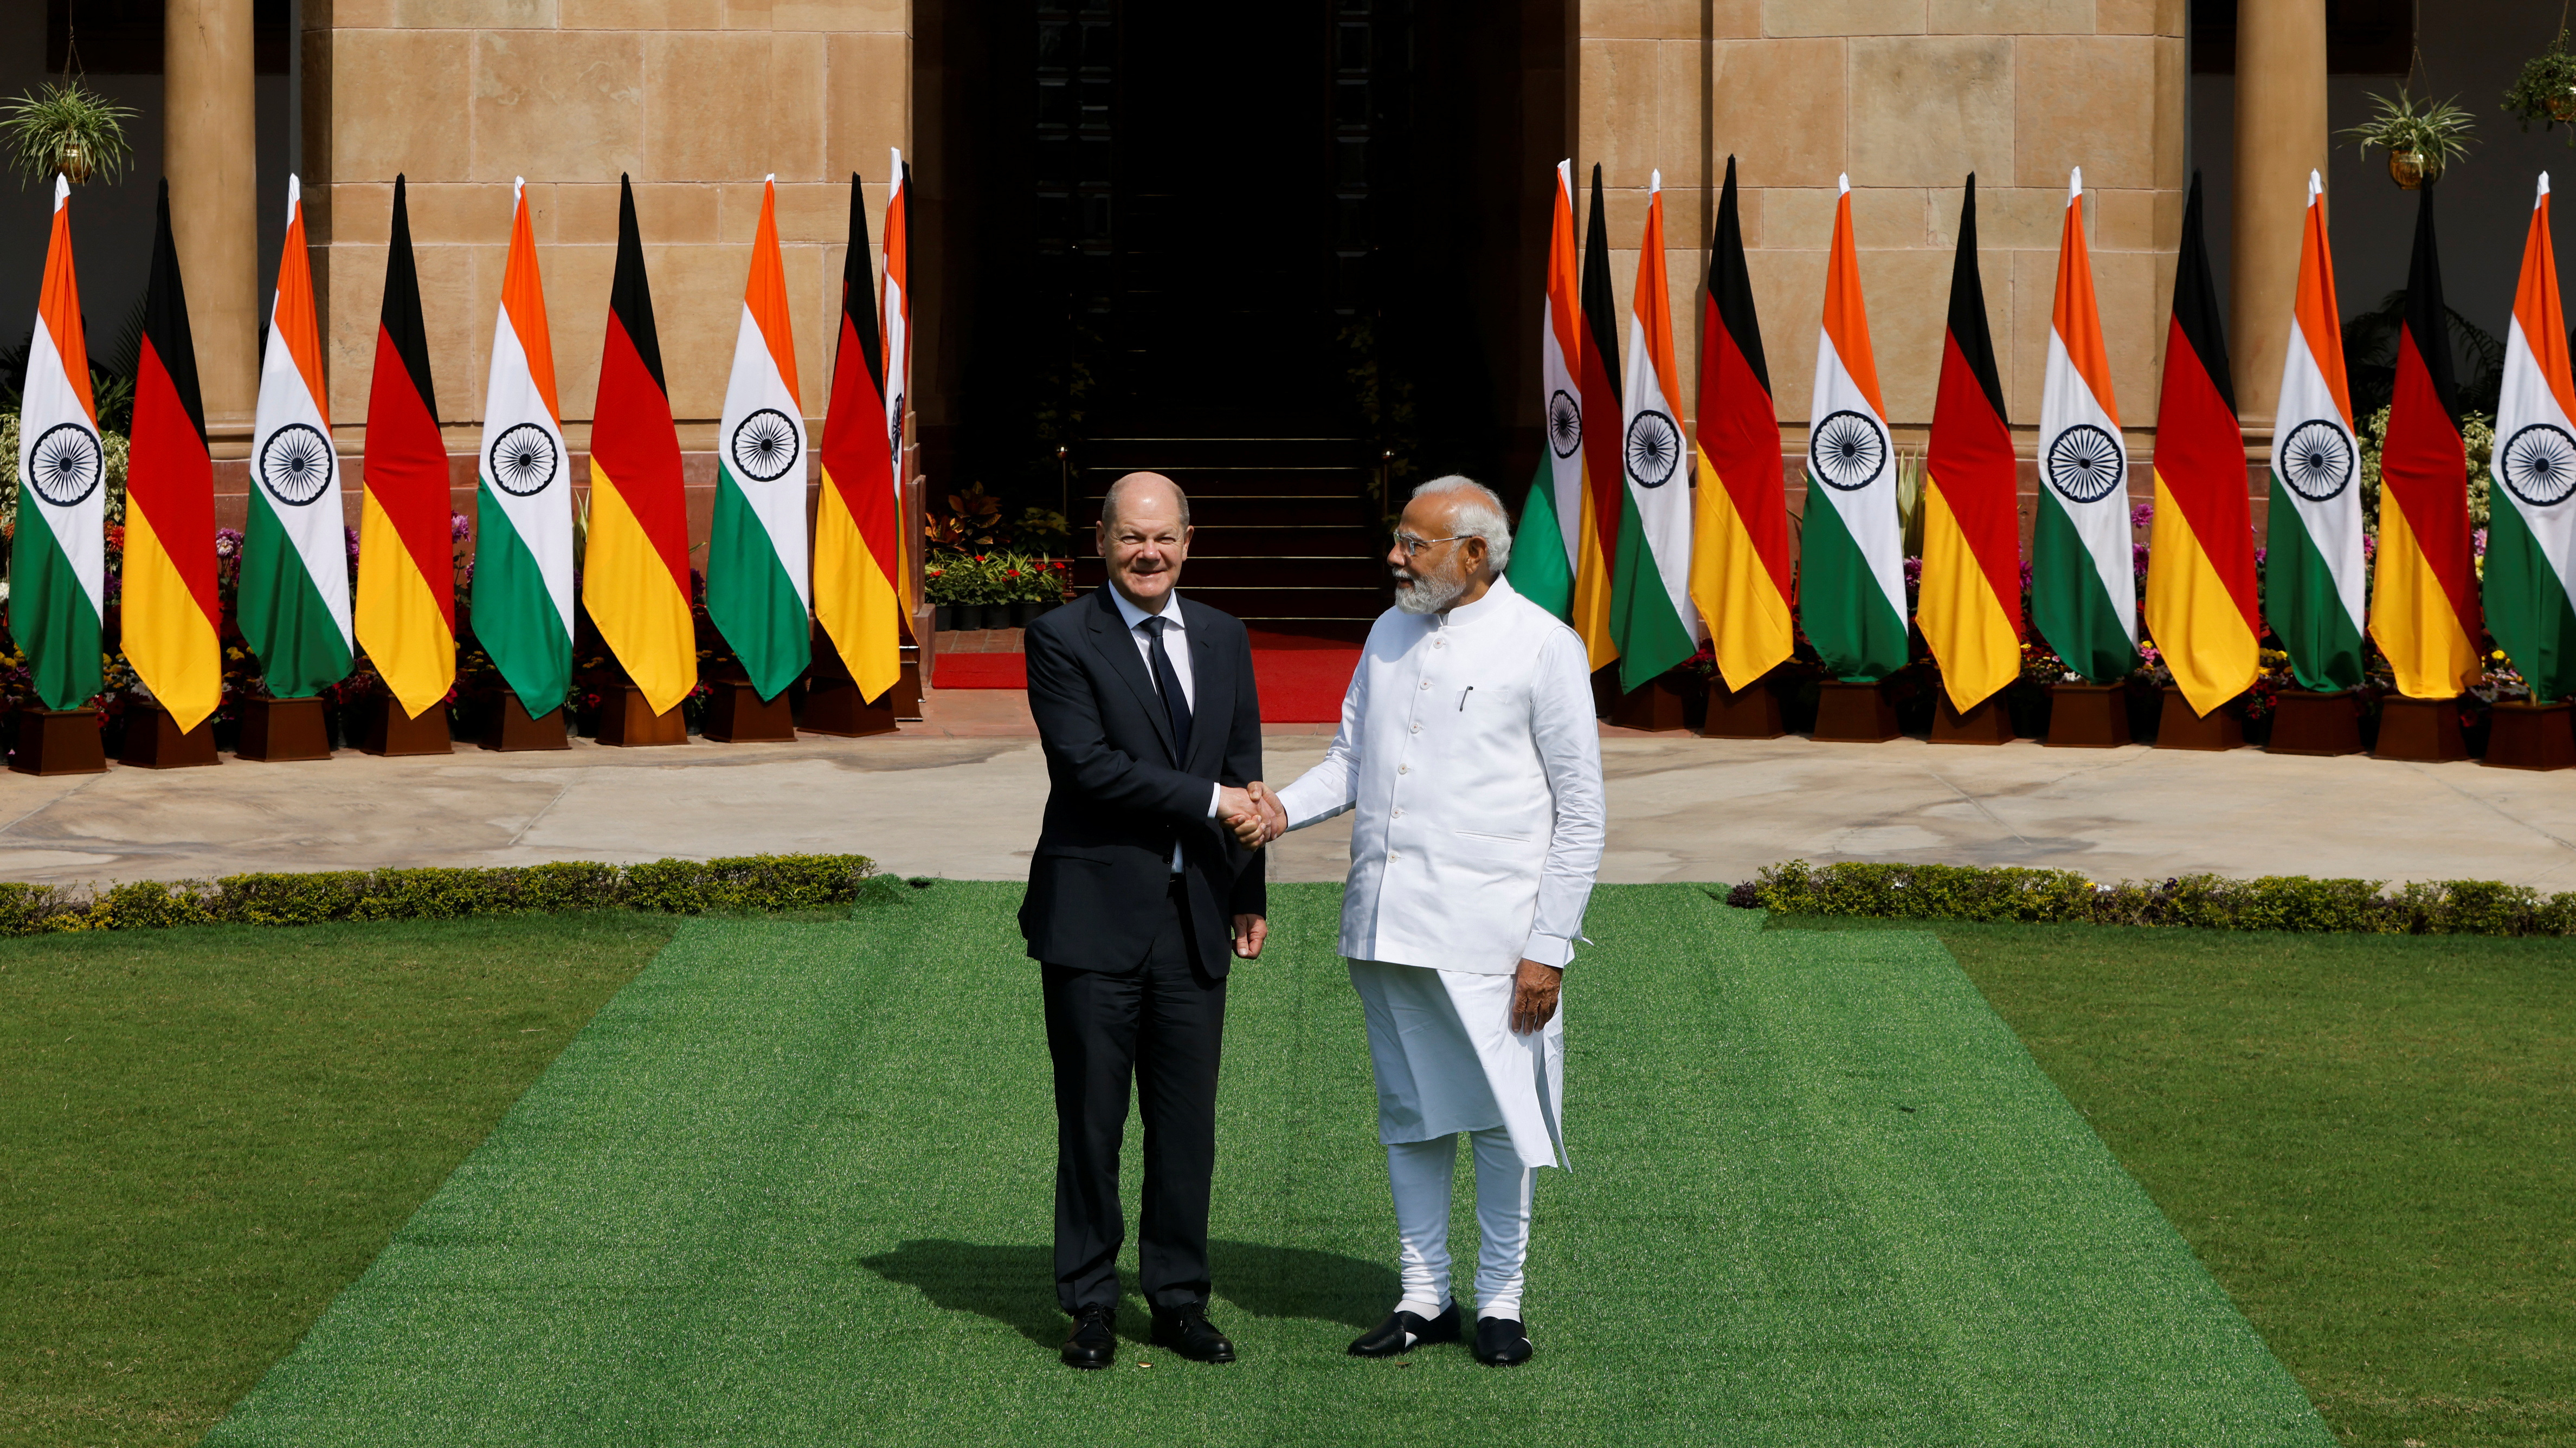 German Chancellor Olaf Scholz visits New Delhi